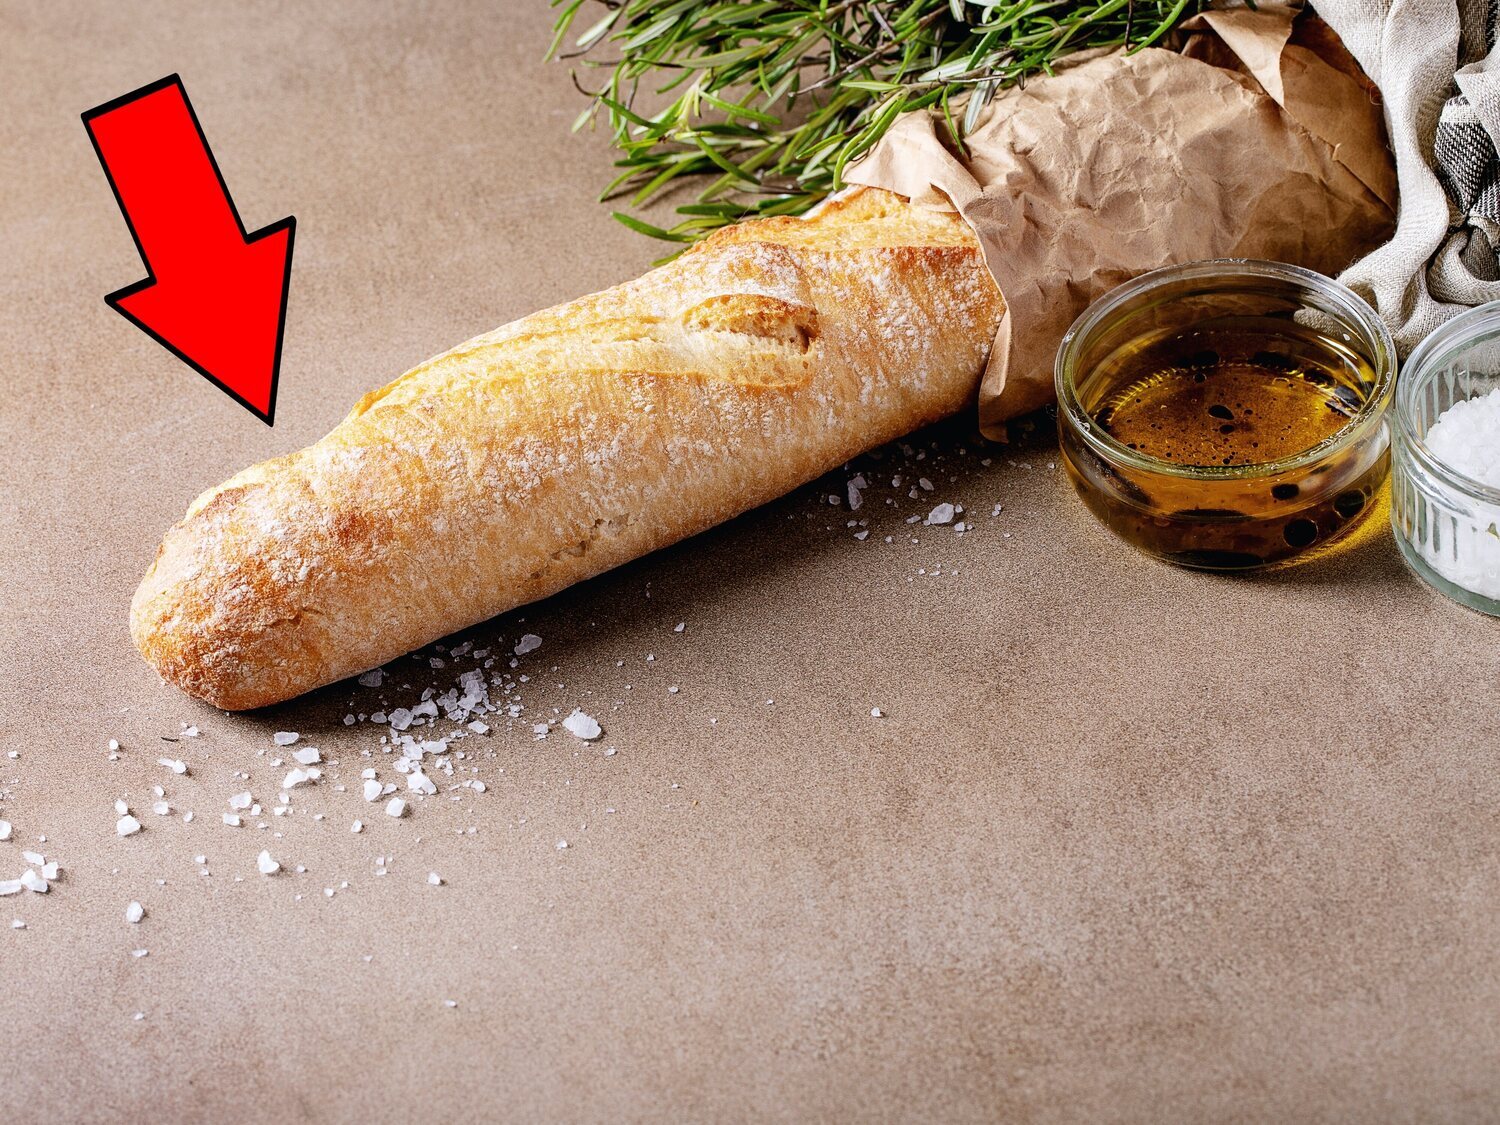 El último debate que divide a las redes: ¿Cómo se llama el extremo crujiente del pan?